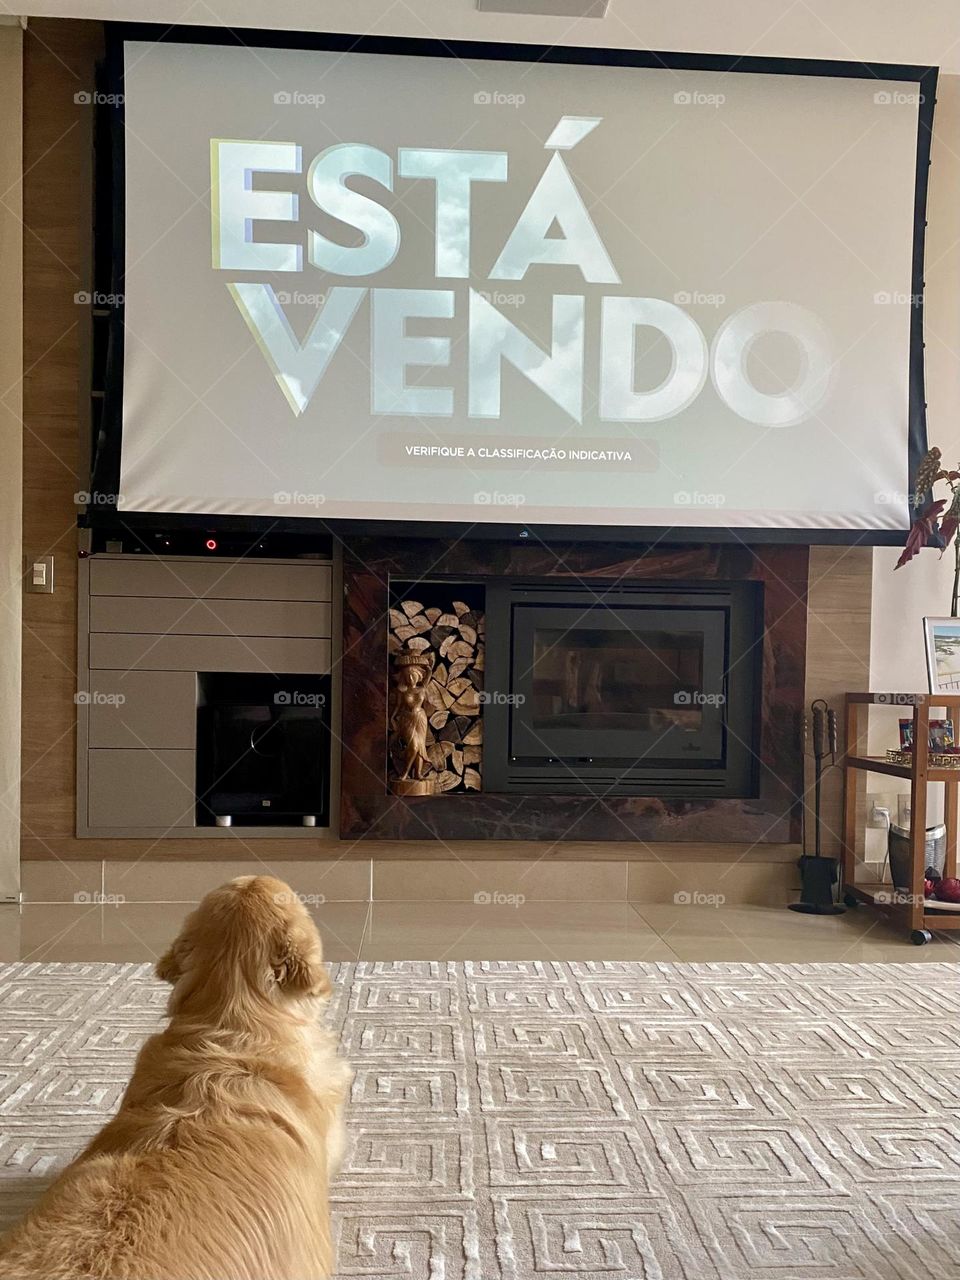 Dog watching tv